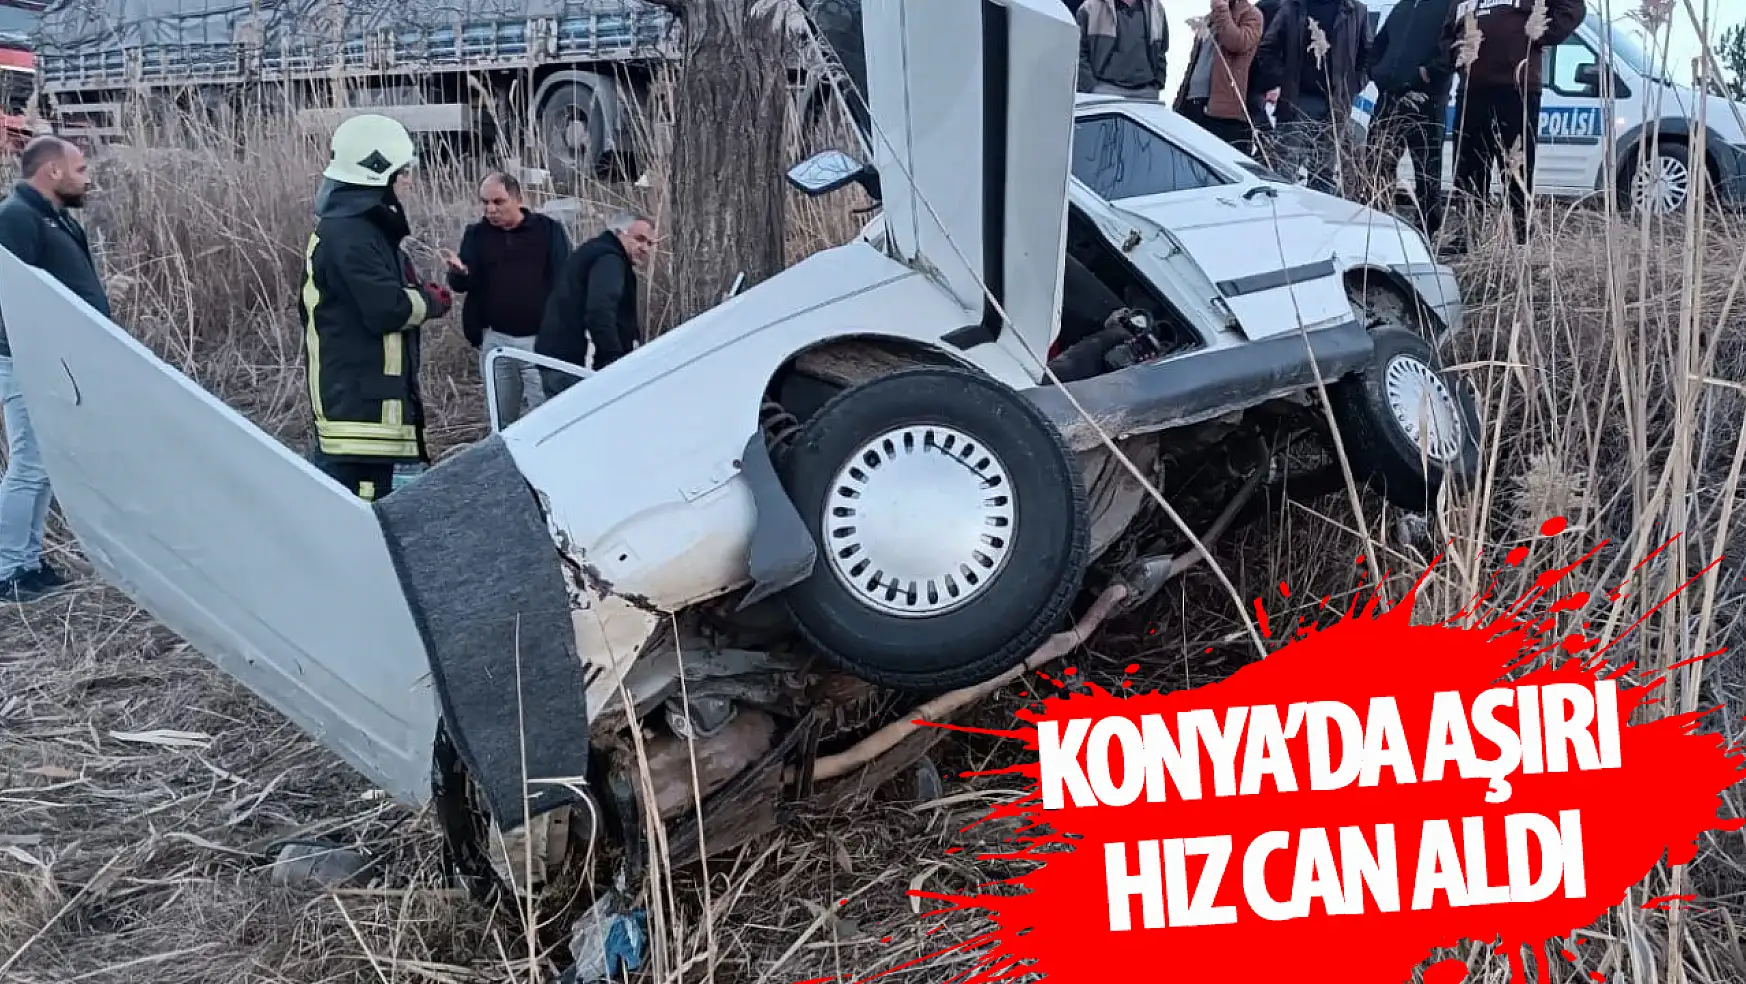 Konya'da aşırı hız can aldı: 3 kişi öldü!